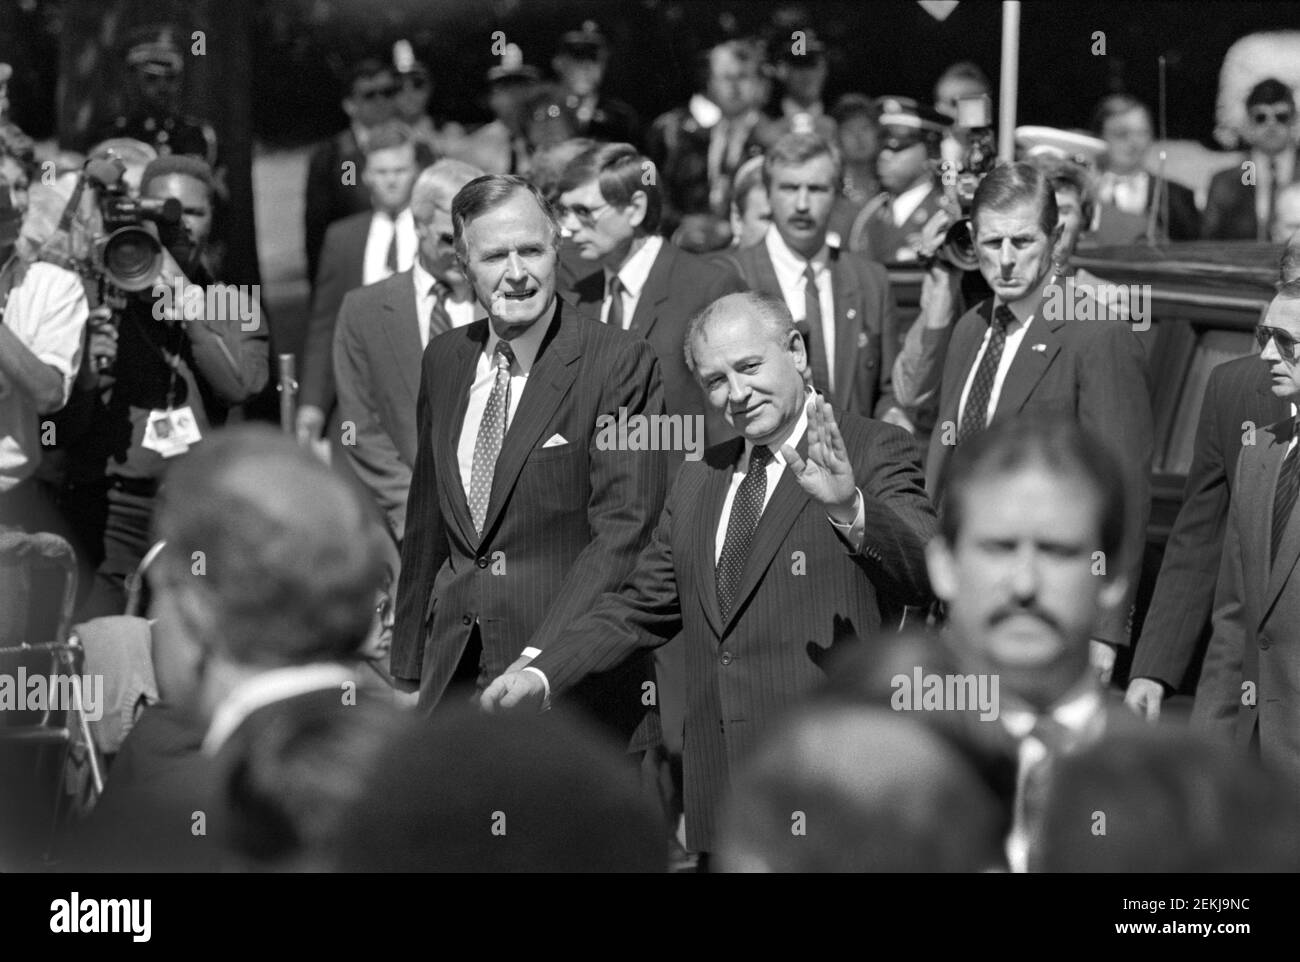 Cerimonia di arrivo del vertice Unione Sovietica-Stati Uniti con il presidente degli Stati Uniti George H.W. Bush e il presidente sovietico Mikhail Gorbachev, Washington, D.C., USA, R. Michael Jenkins, 31 maggio 1990 Foto Stock